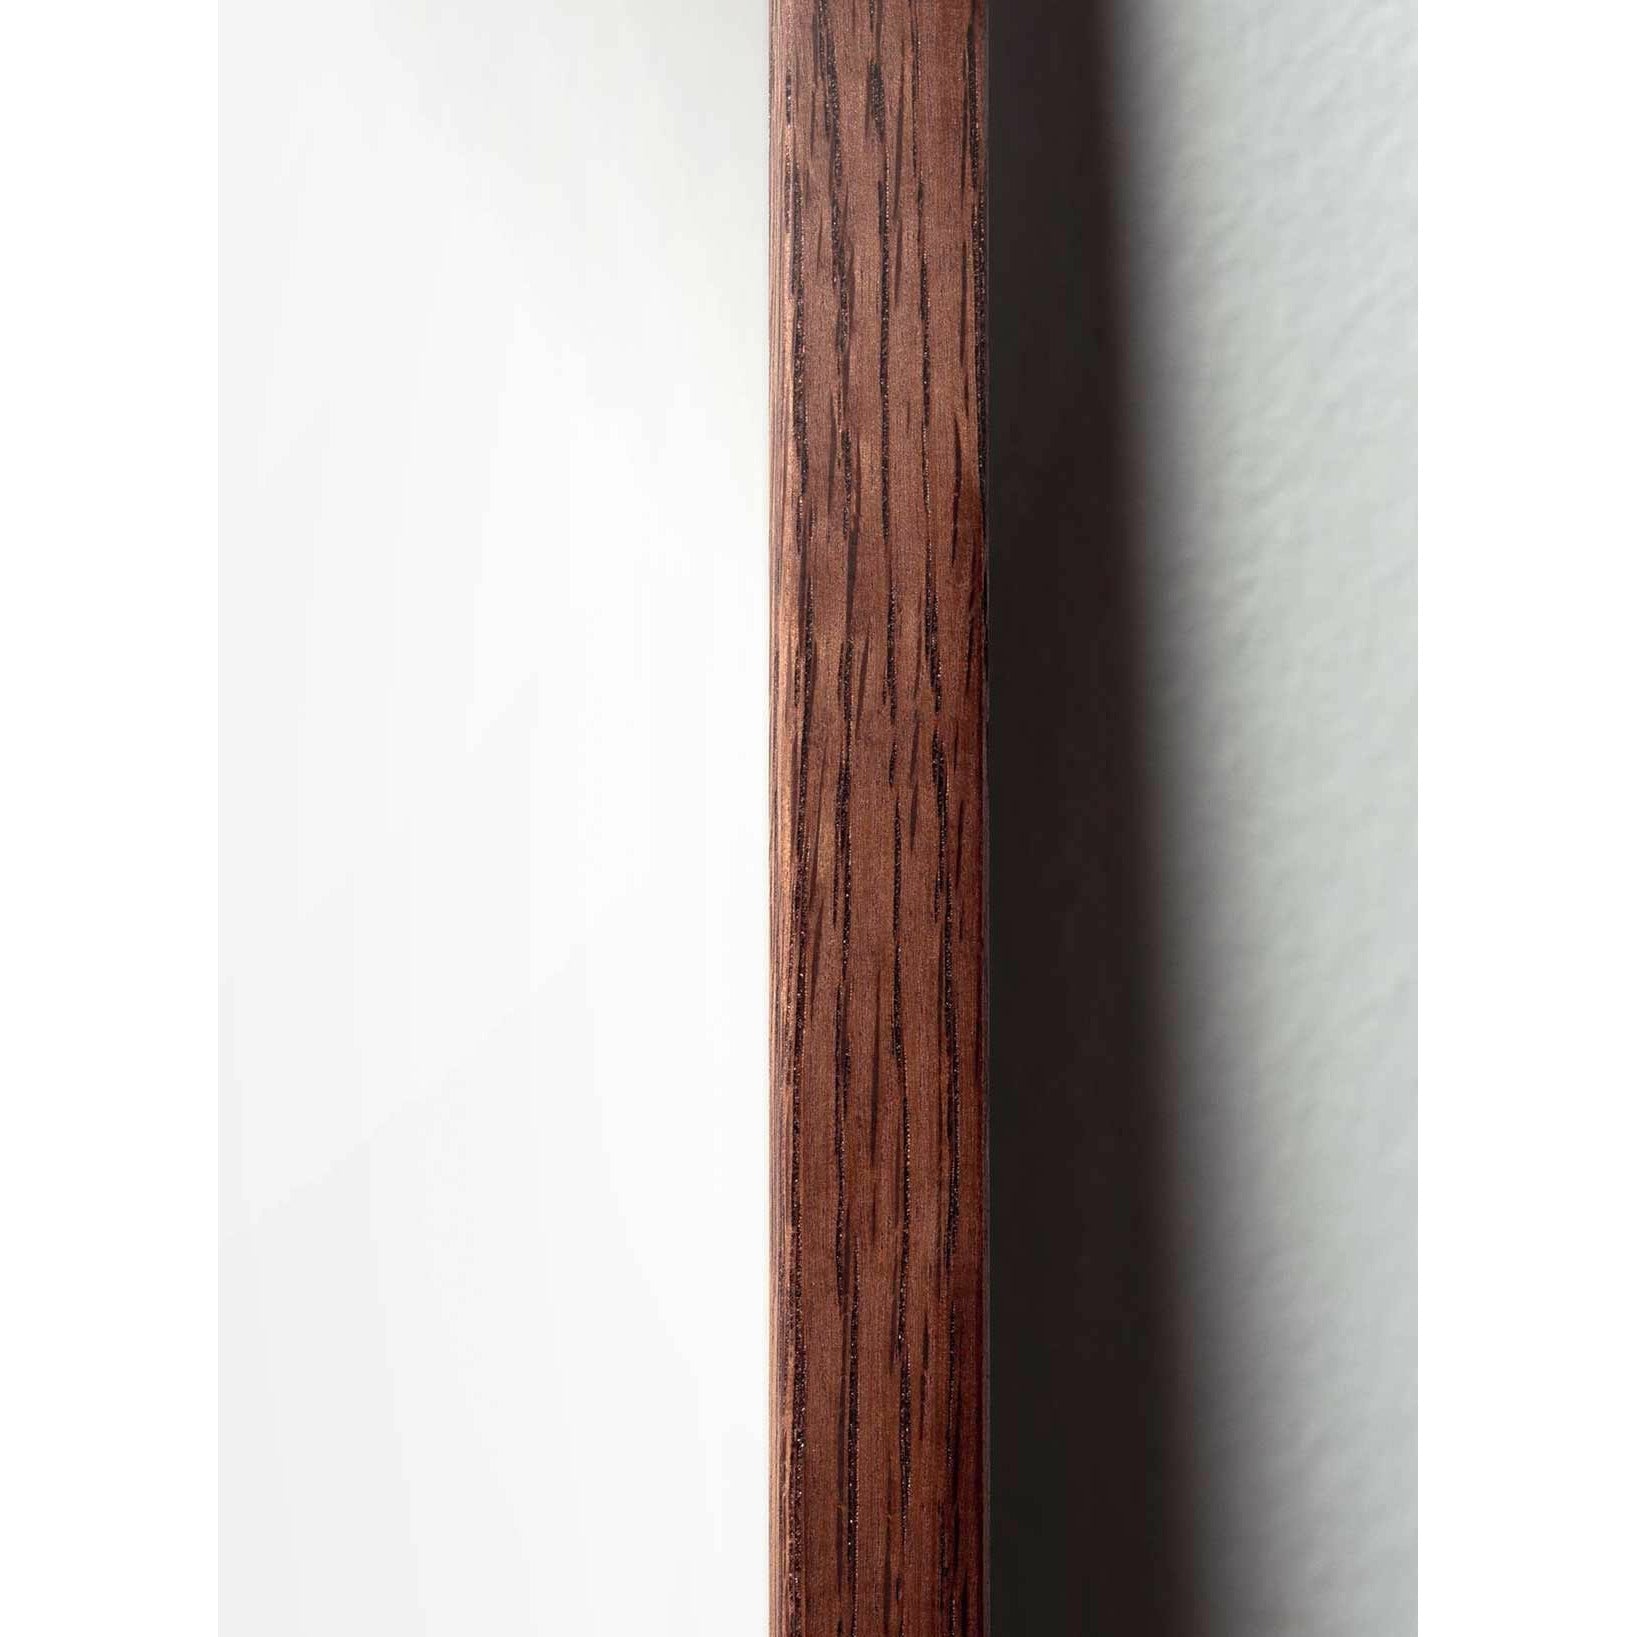 Póster de diseño de diseño de oso de peluche, marco hecho de madera oscura 50x70 cm, gris